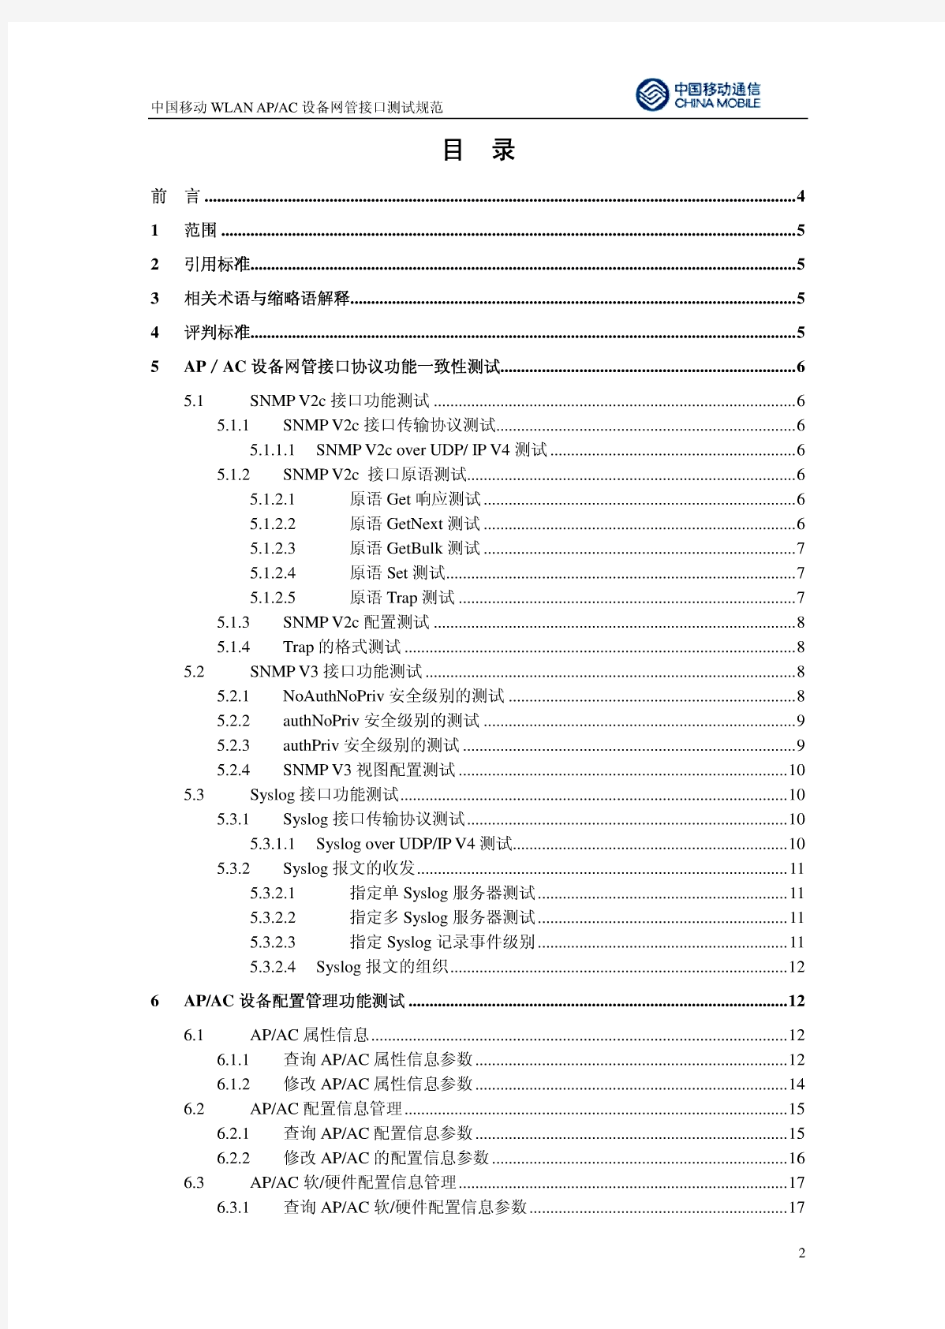 中国移动WLAN-AP_AC设备网管接口测试规范_1.0